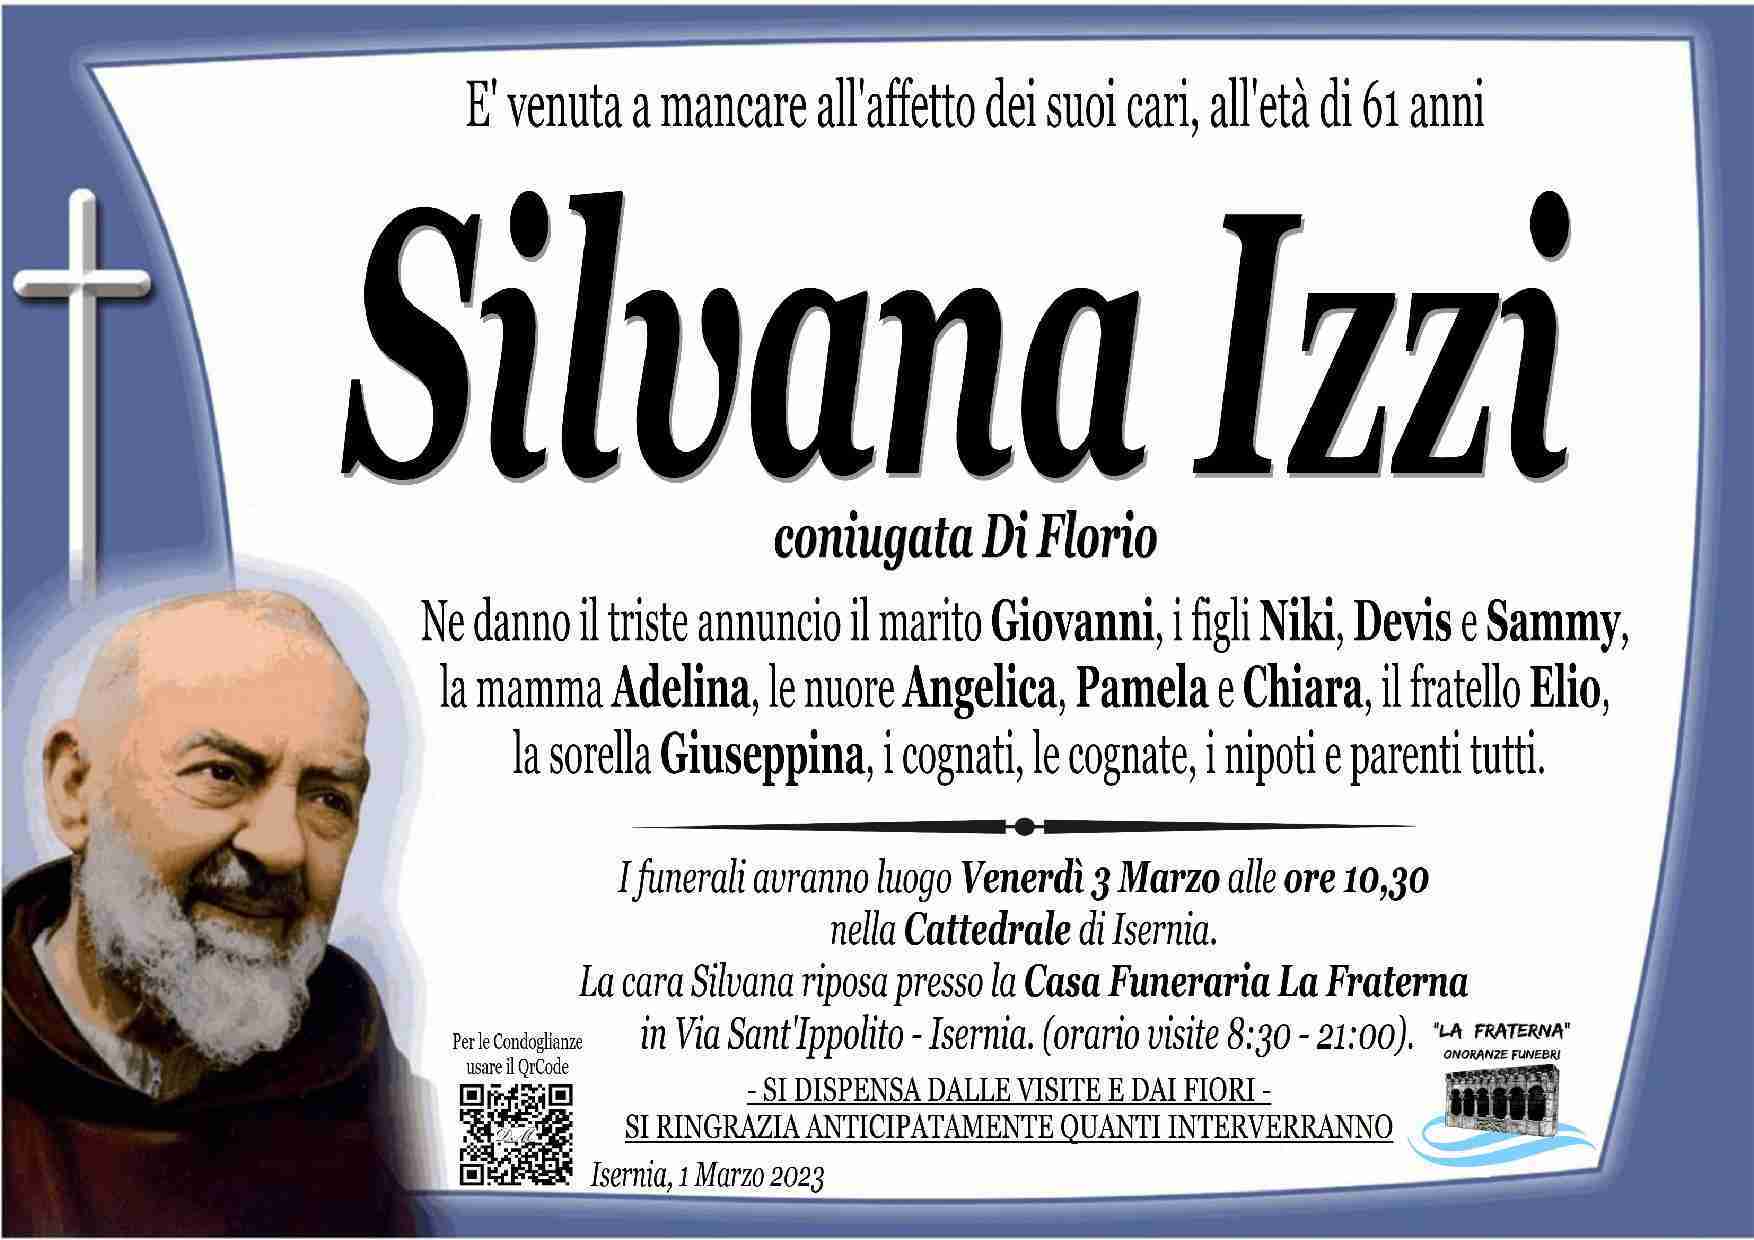 Silvana Izzi